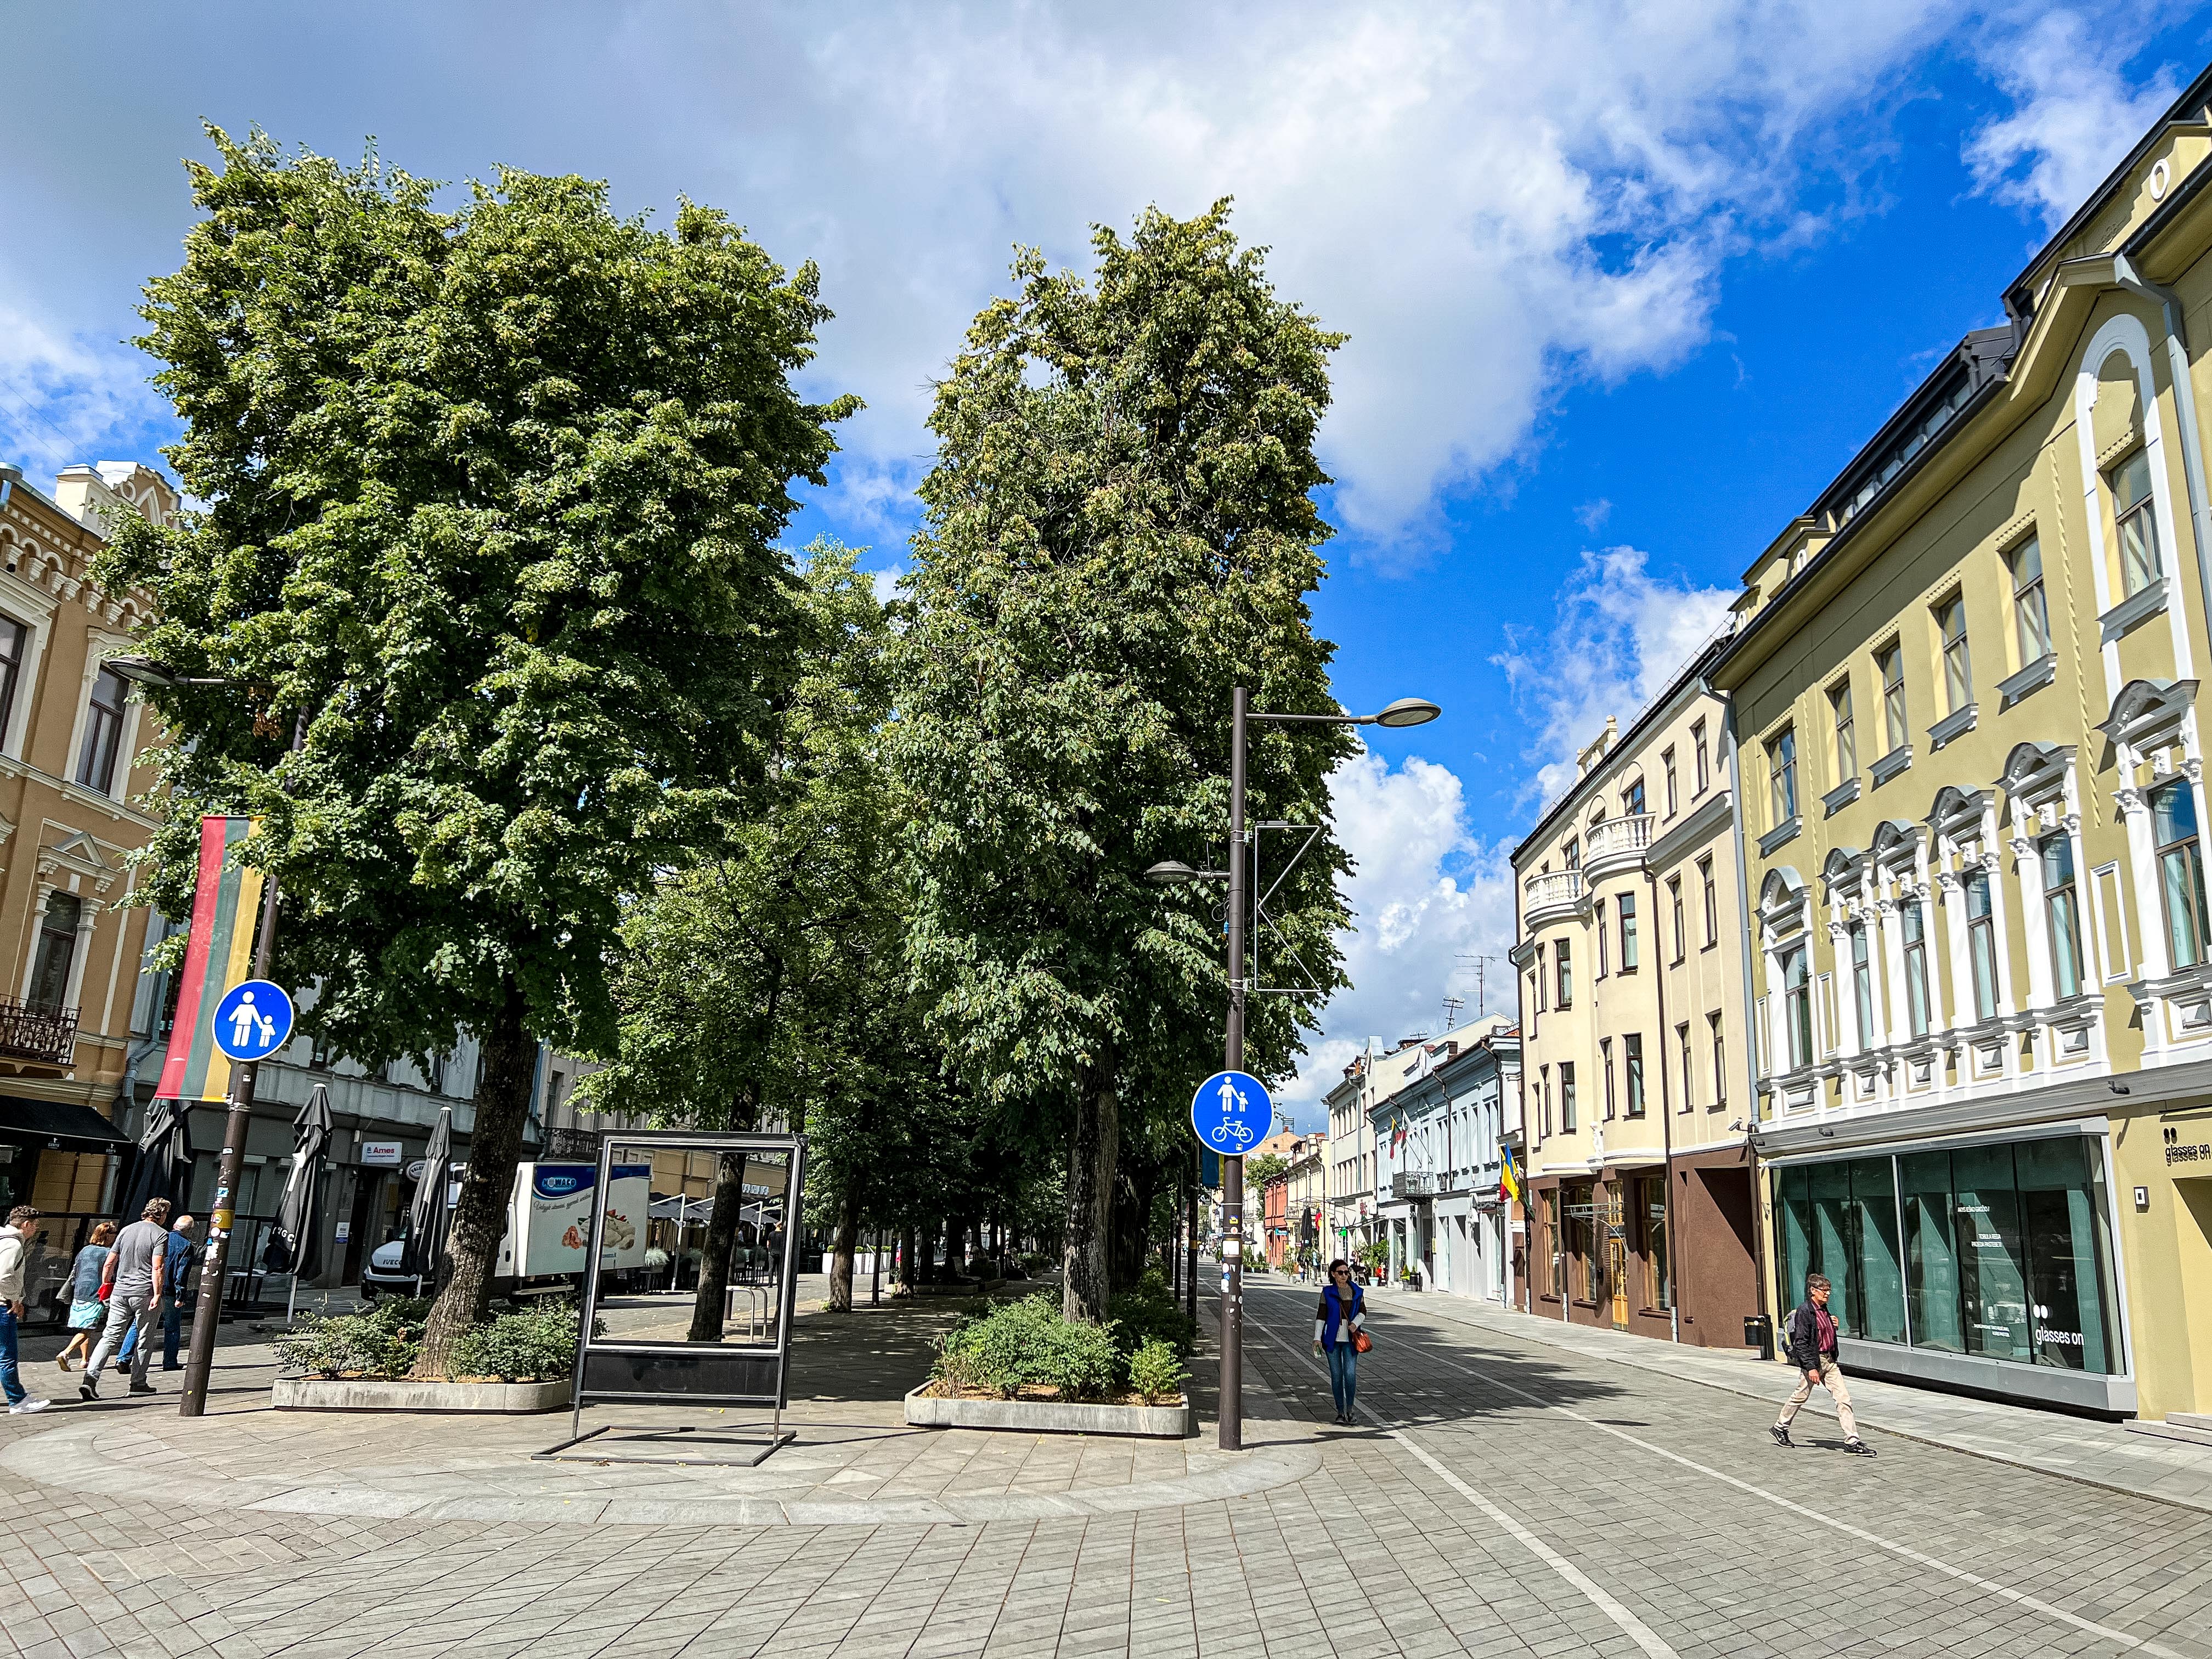 Laisvés al. Rua em Kaunas